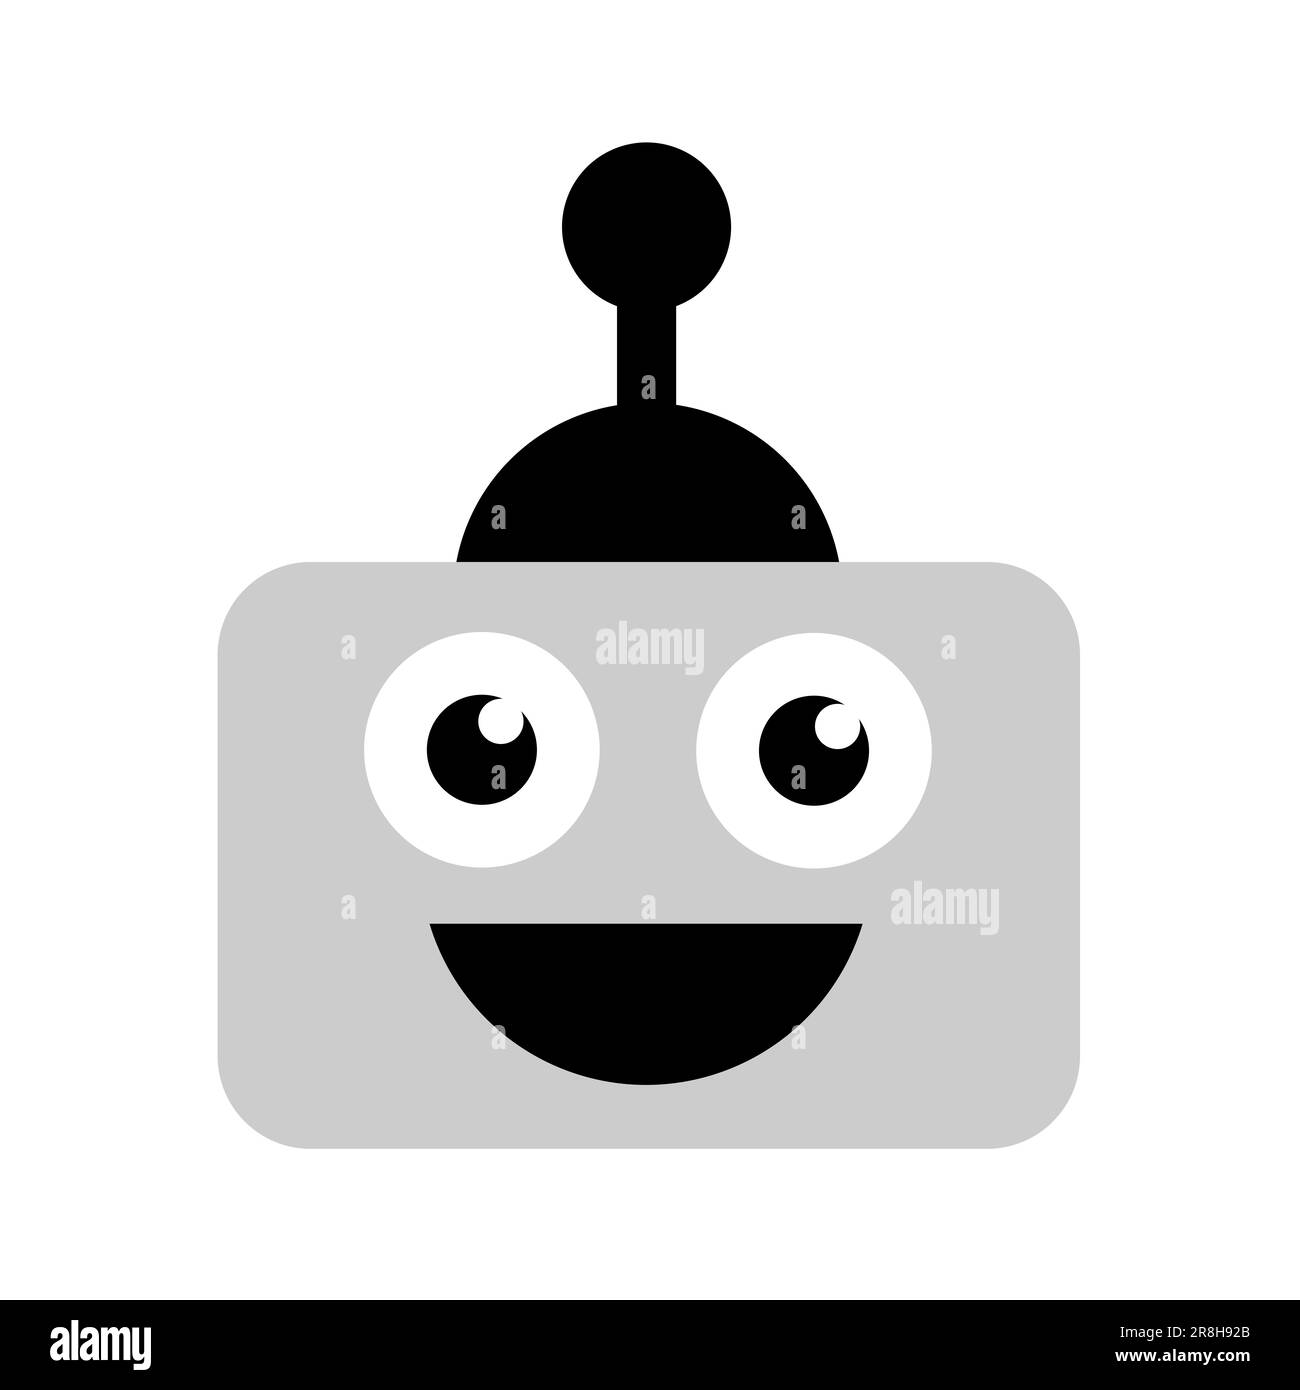 El robot emocional es feliz, alegre y sonriente. Robótica y emoción positiva de felicidad y alegría. Ilustración vectorial aislado en blanco. Foto de stock